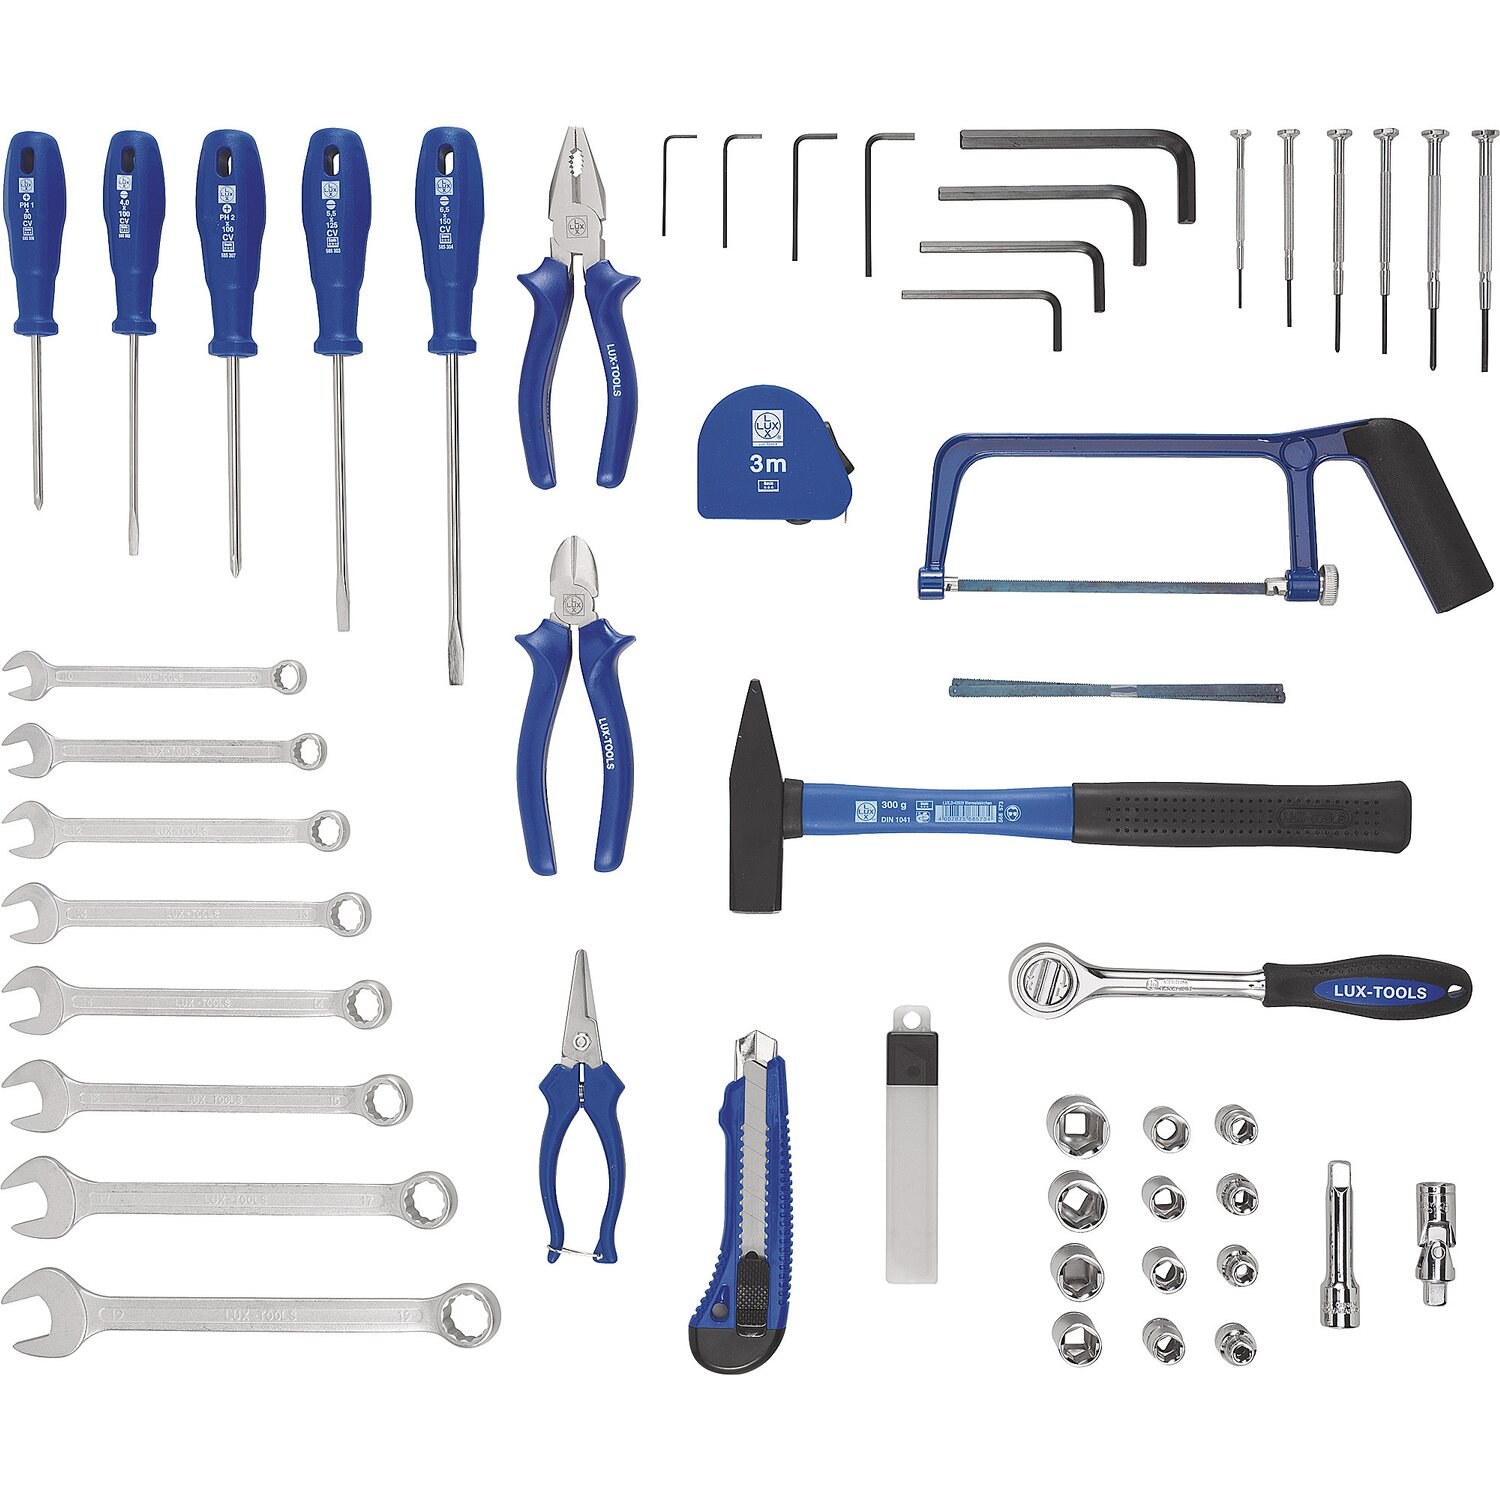 Classic tools. Набор Lux Tools инструментов слесарно монтажный 70 шт. Lux Tools набор инструментов синий 43. Lux Tools набор инструментов 54. Инструмент для сборки мебели икеа.